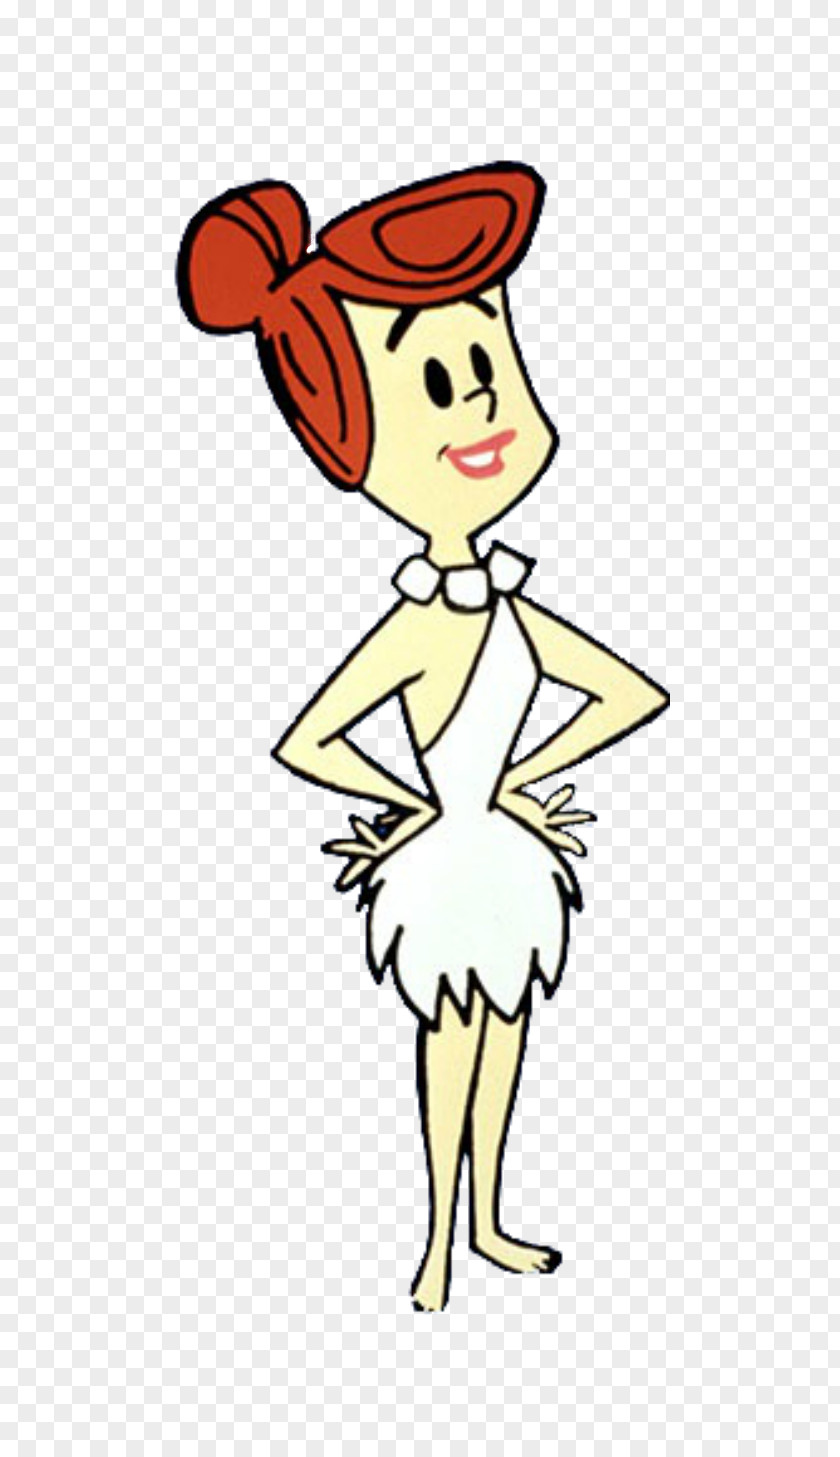 Wilma Flintstone Betty Rubble Cartoon Illustration Clip Art PNG